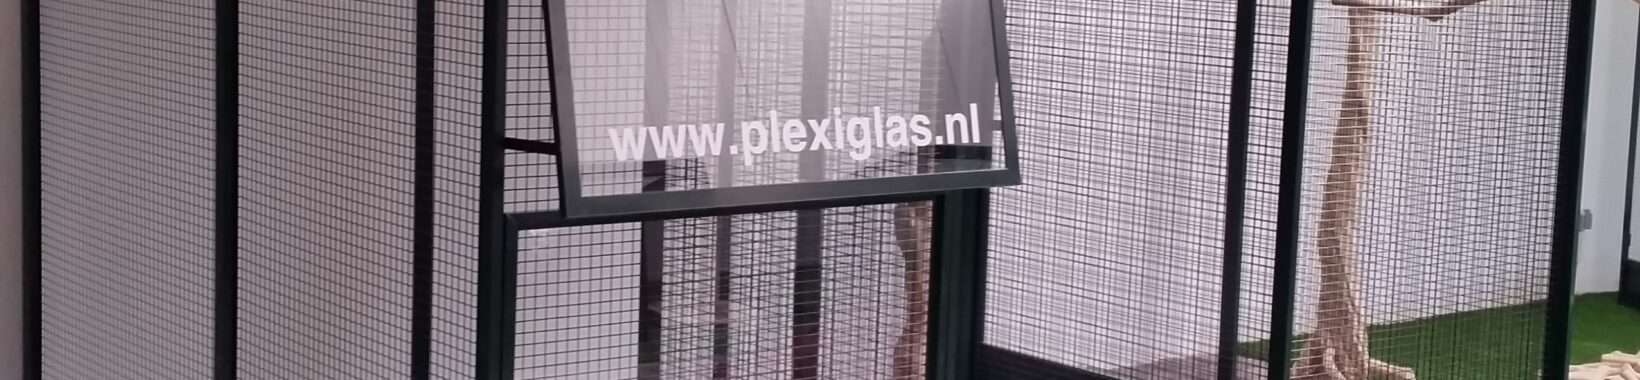 regen Specificiteit Verandering Plexiglas voorzetraam dierenverblijven | Plexiglas.nl